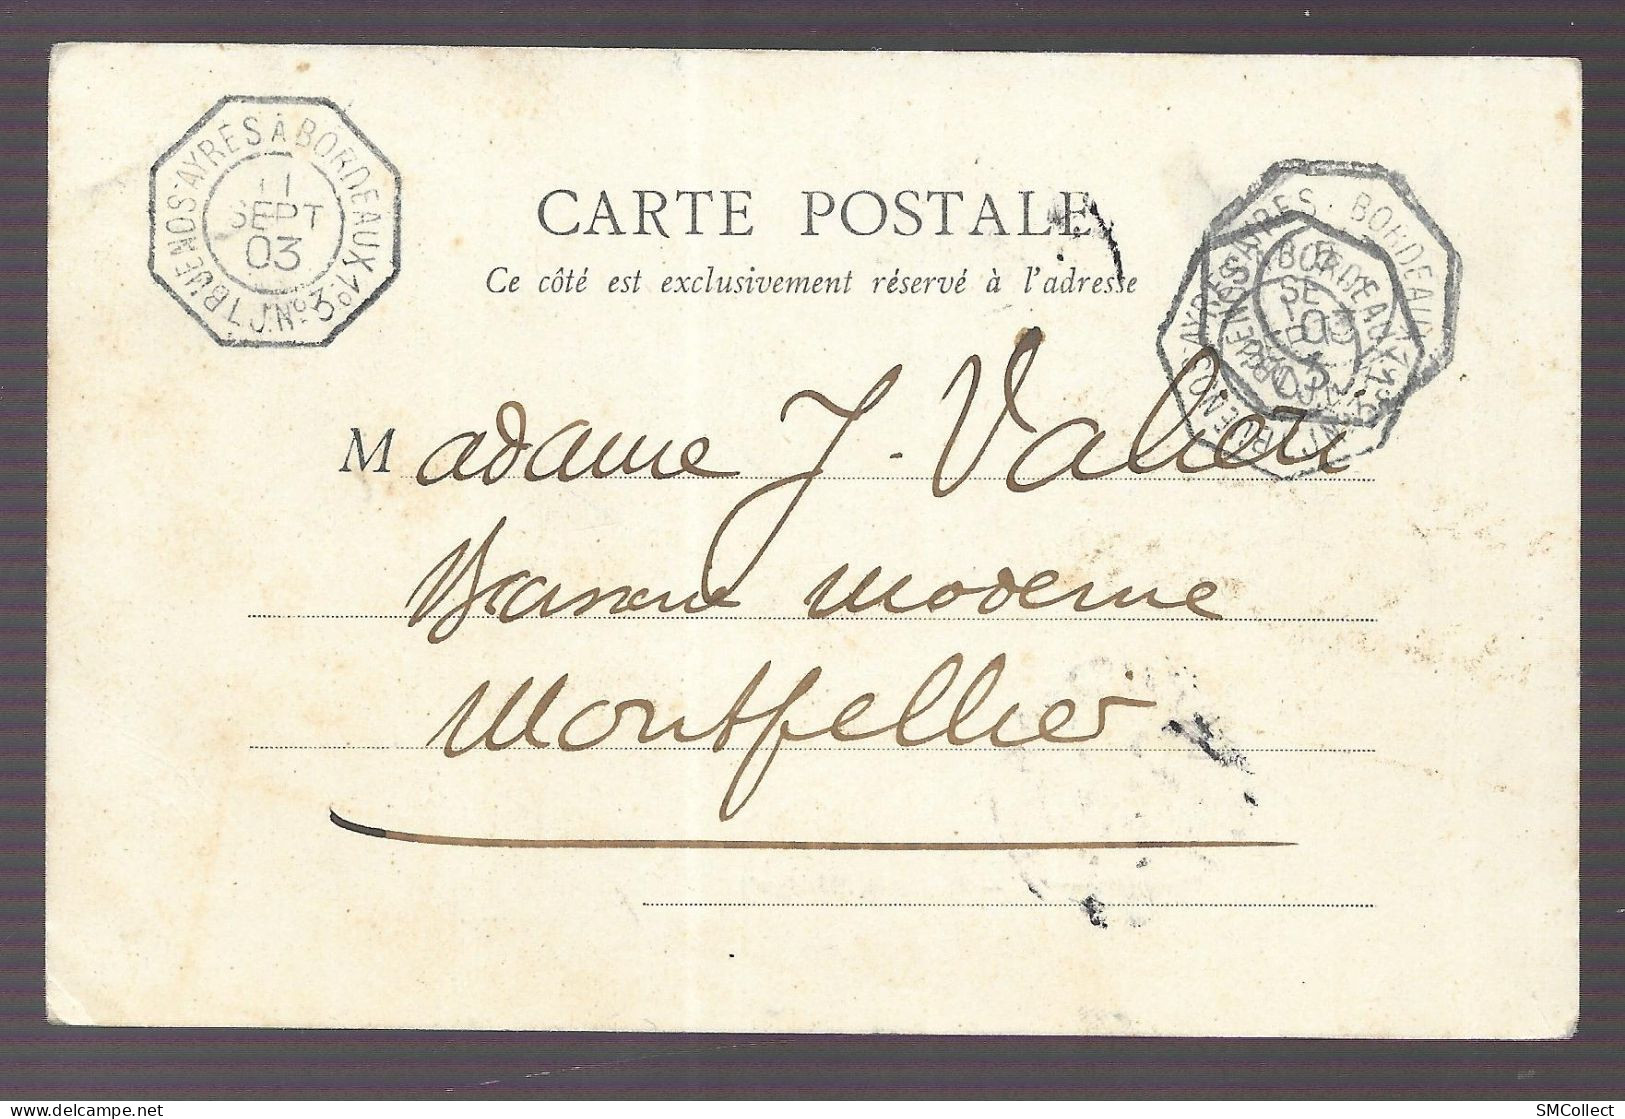 Sénégal, Cpa 1903. Rufisque, Blanchisseuses + Cachet Ambulant LJ. N°3. Buenos Ayres à Bordeaux 1° (A17p18) - Sénégal